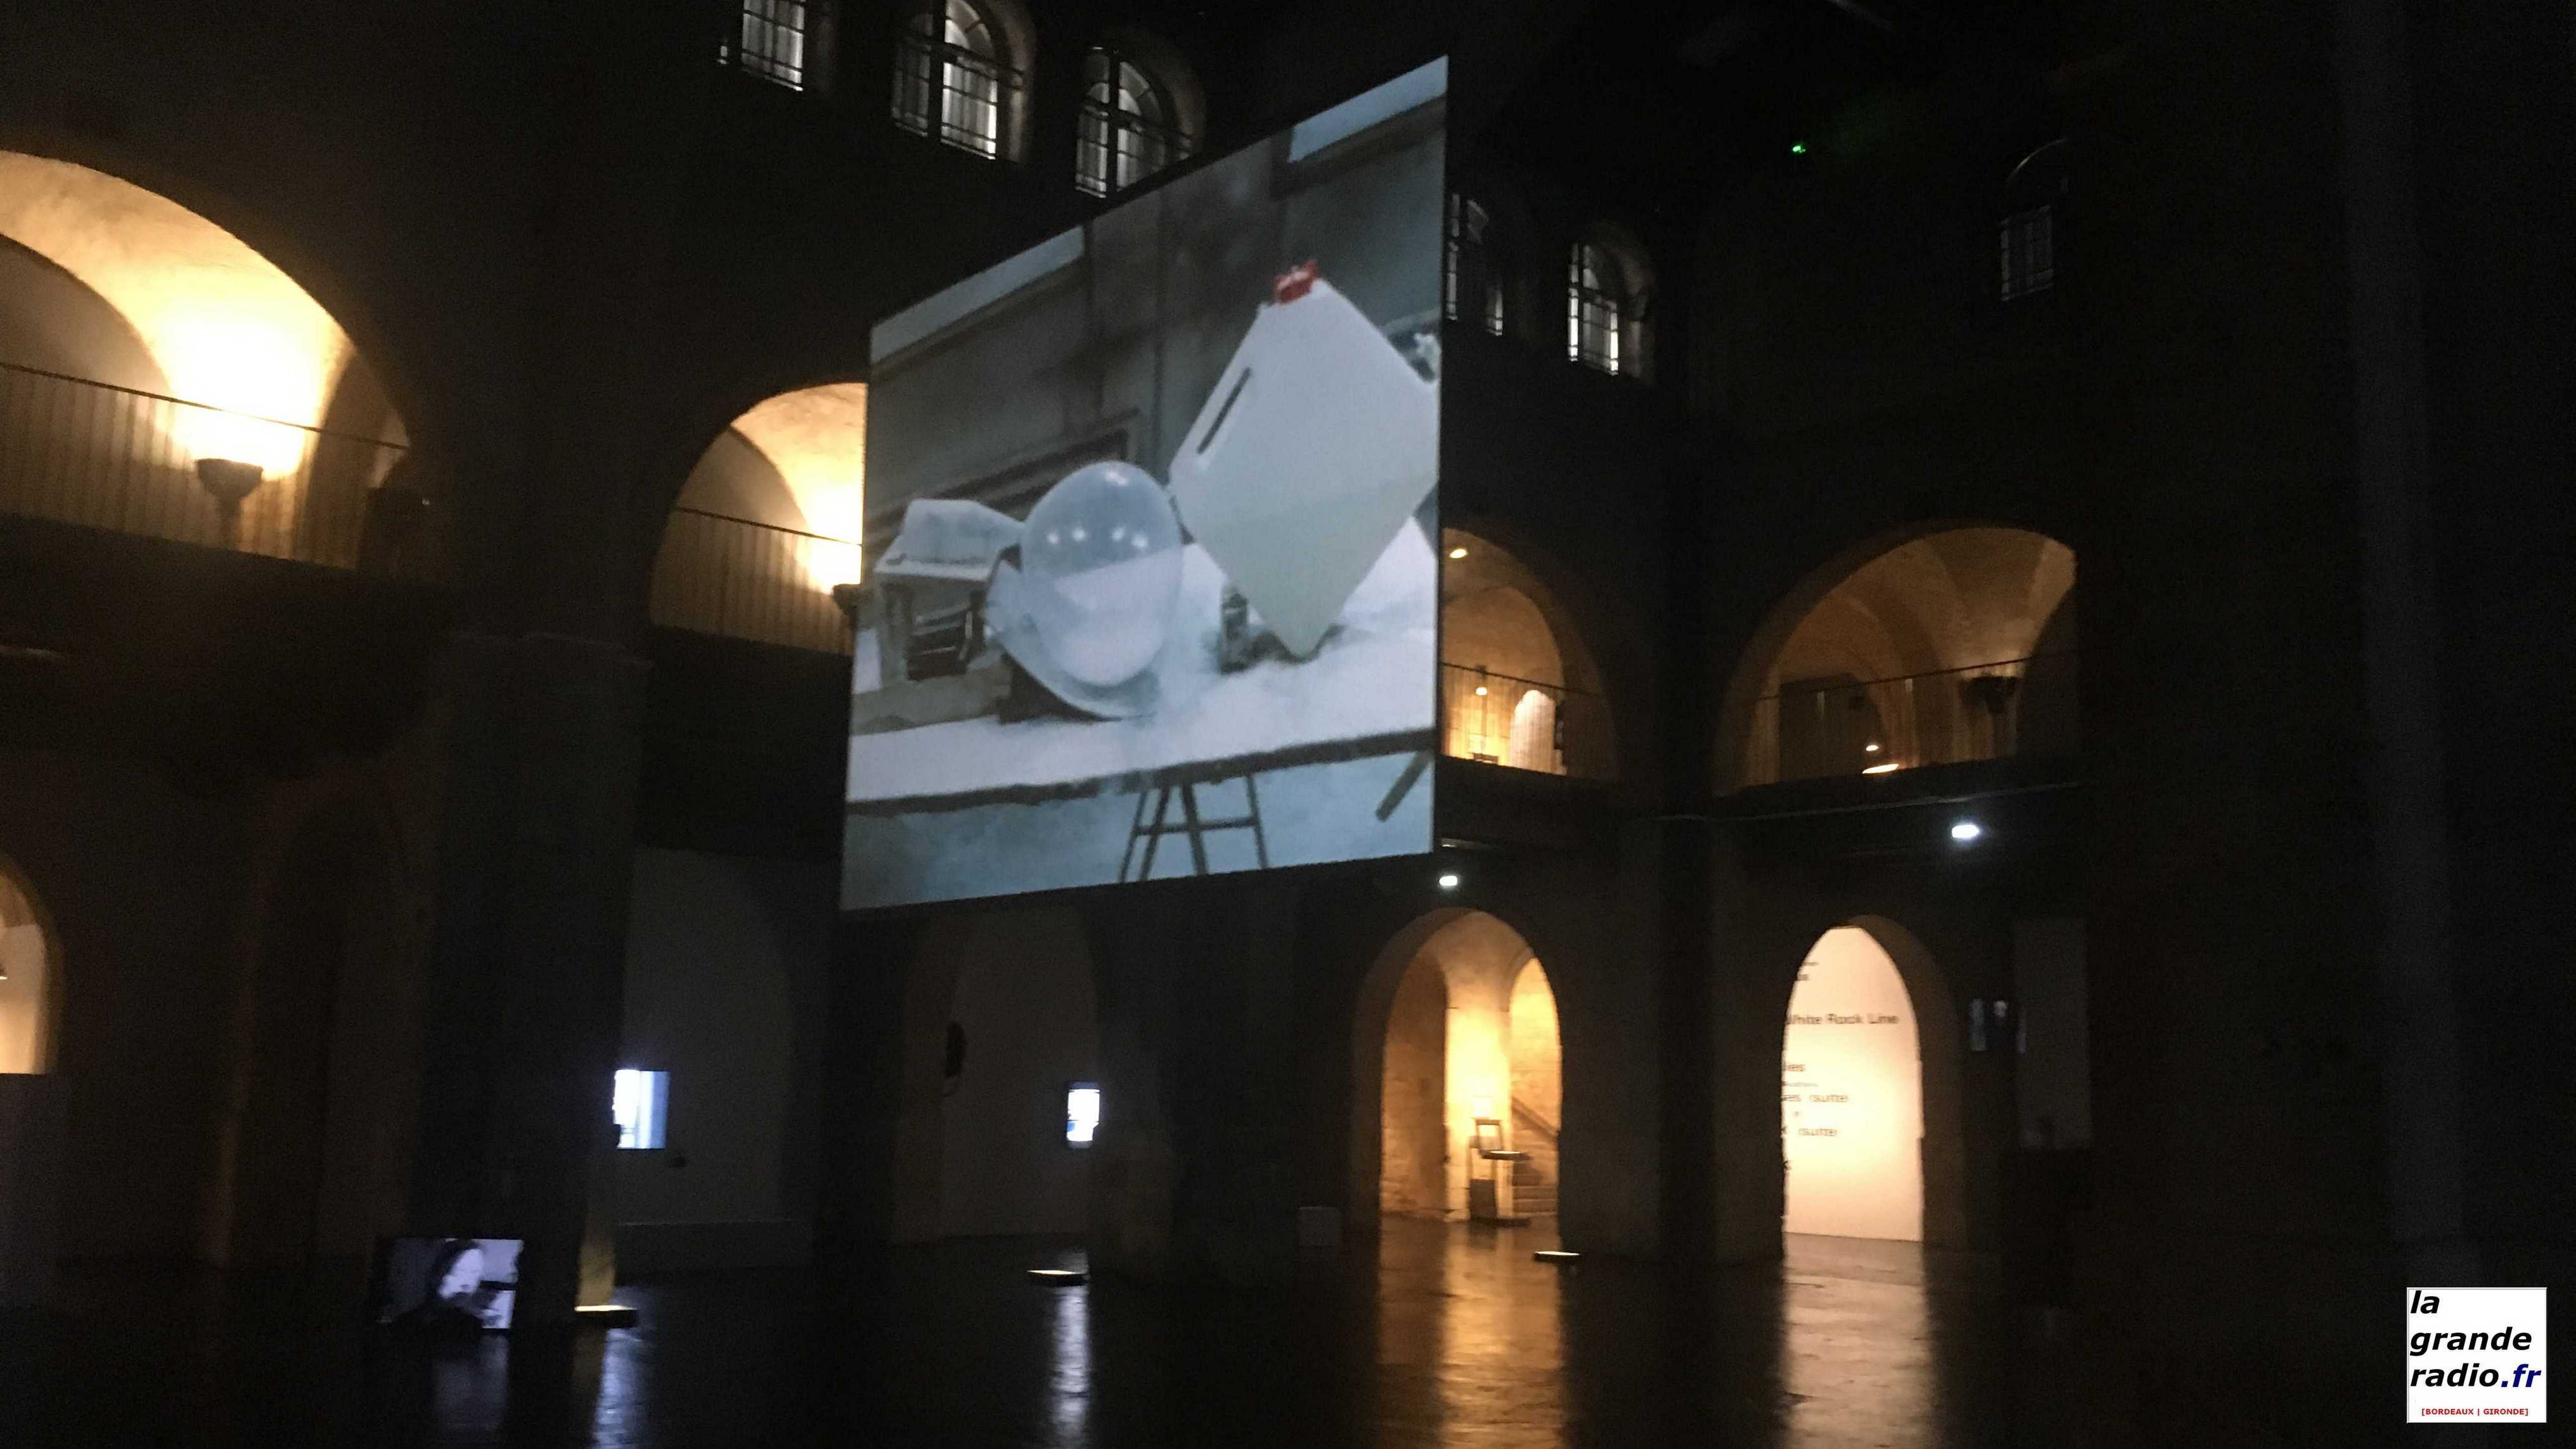 Films et vidéos d’artistes, exposition au CAPC à Bordeaux en regard de la crise sanitaire actuelle et reprendre "Le Cours des choses" 